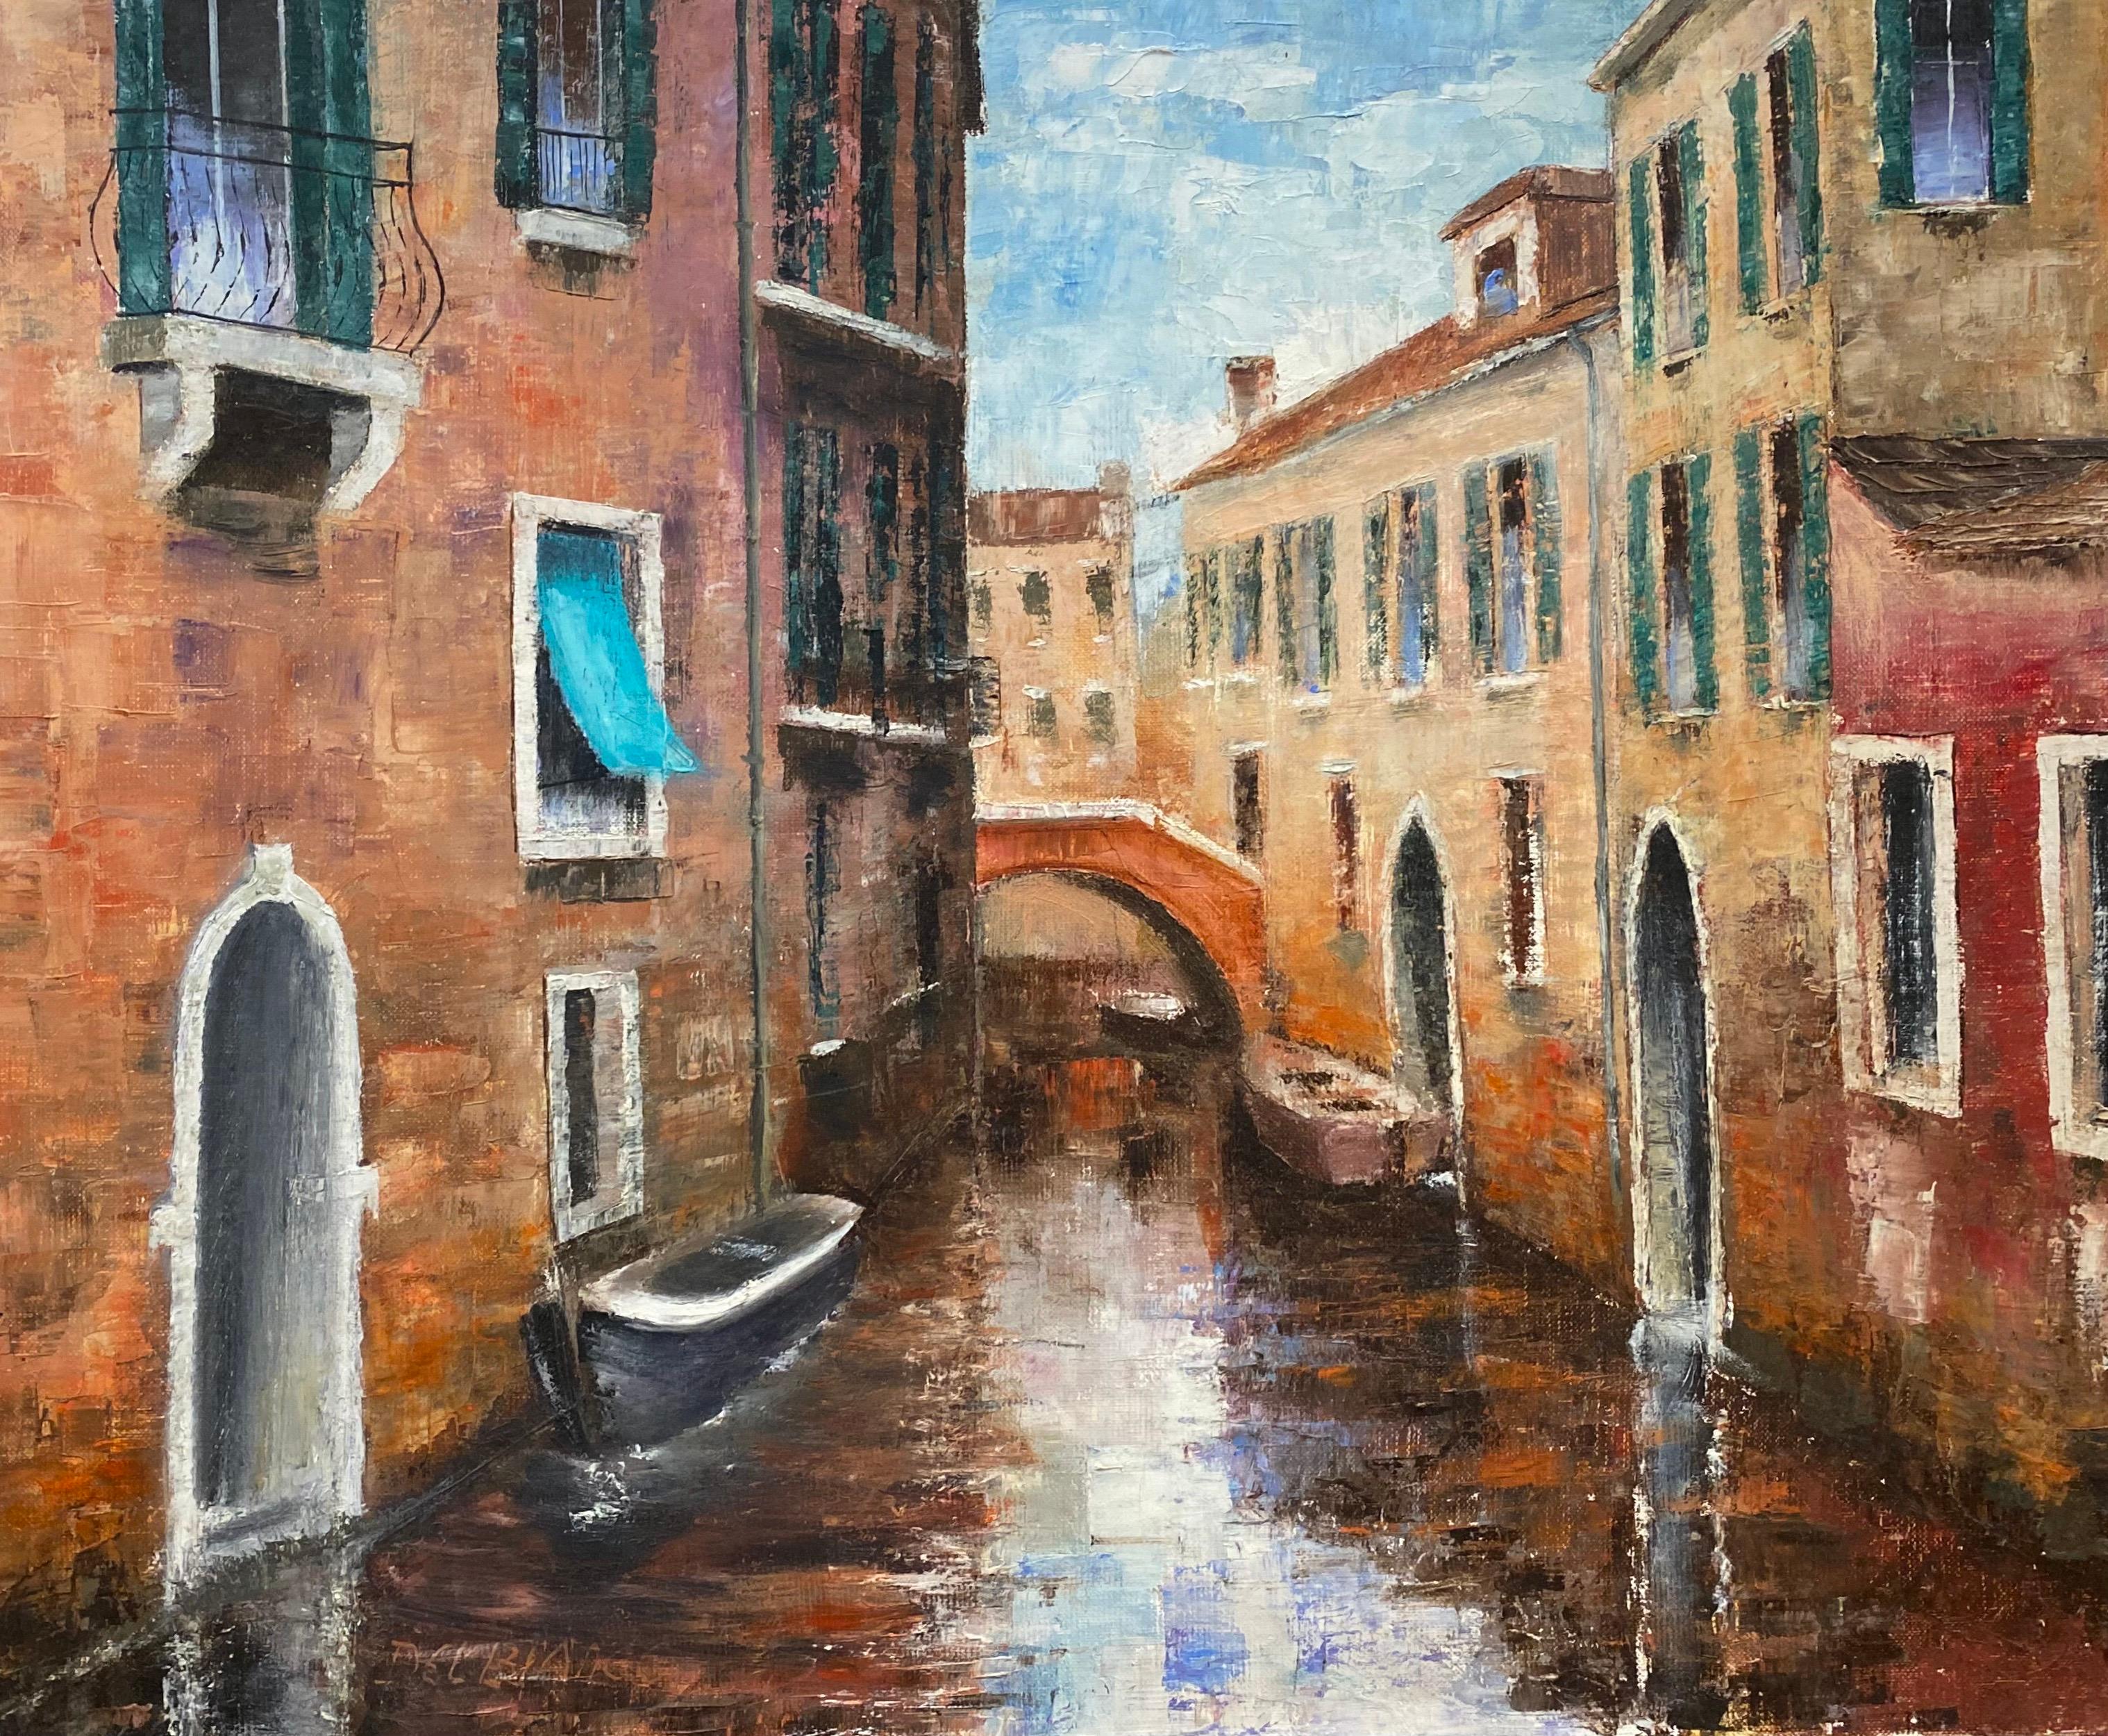 Aquarelle du canal Tranquil de Venise, peinture à l'huile originale sur toile